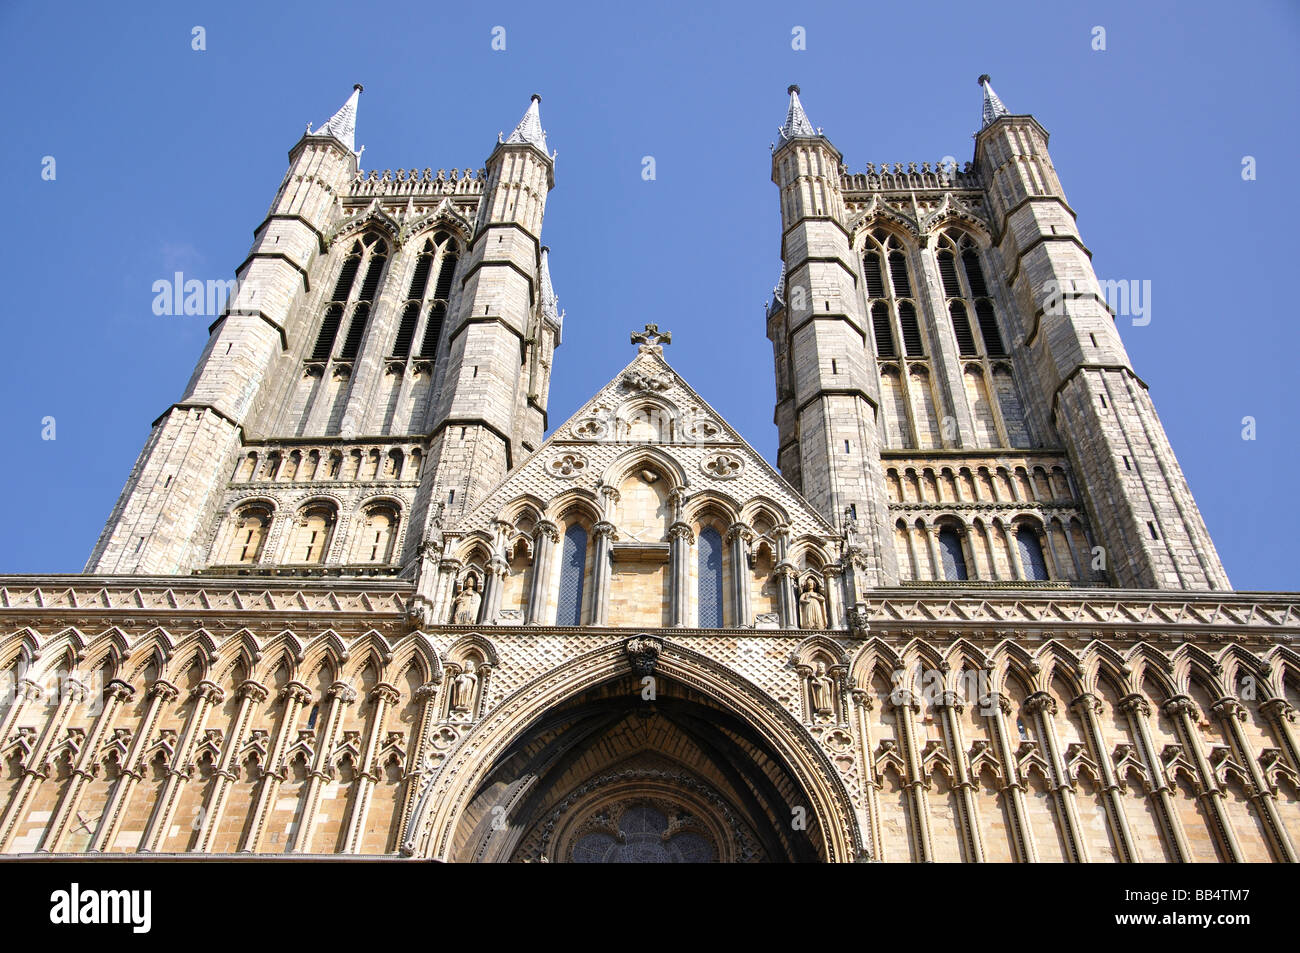 L'ouest de Norman, avant la cathédrale de Lincoln, Lincoln, Lincolnshire, Angleterre, Royaume-Uni Banque D'Images